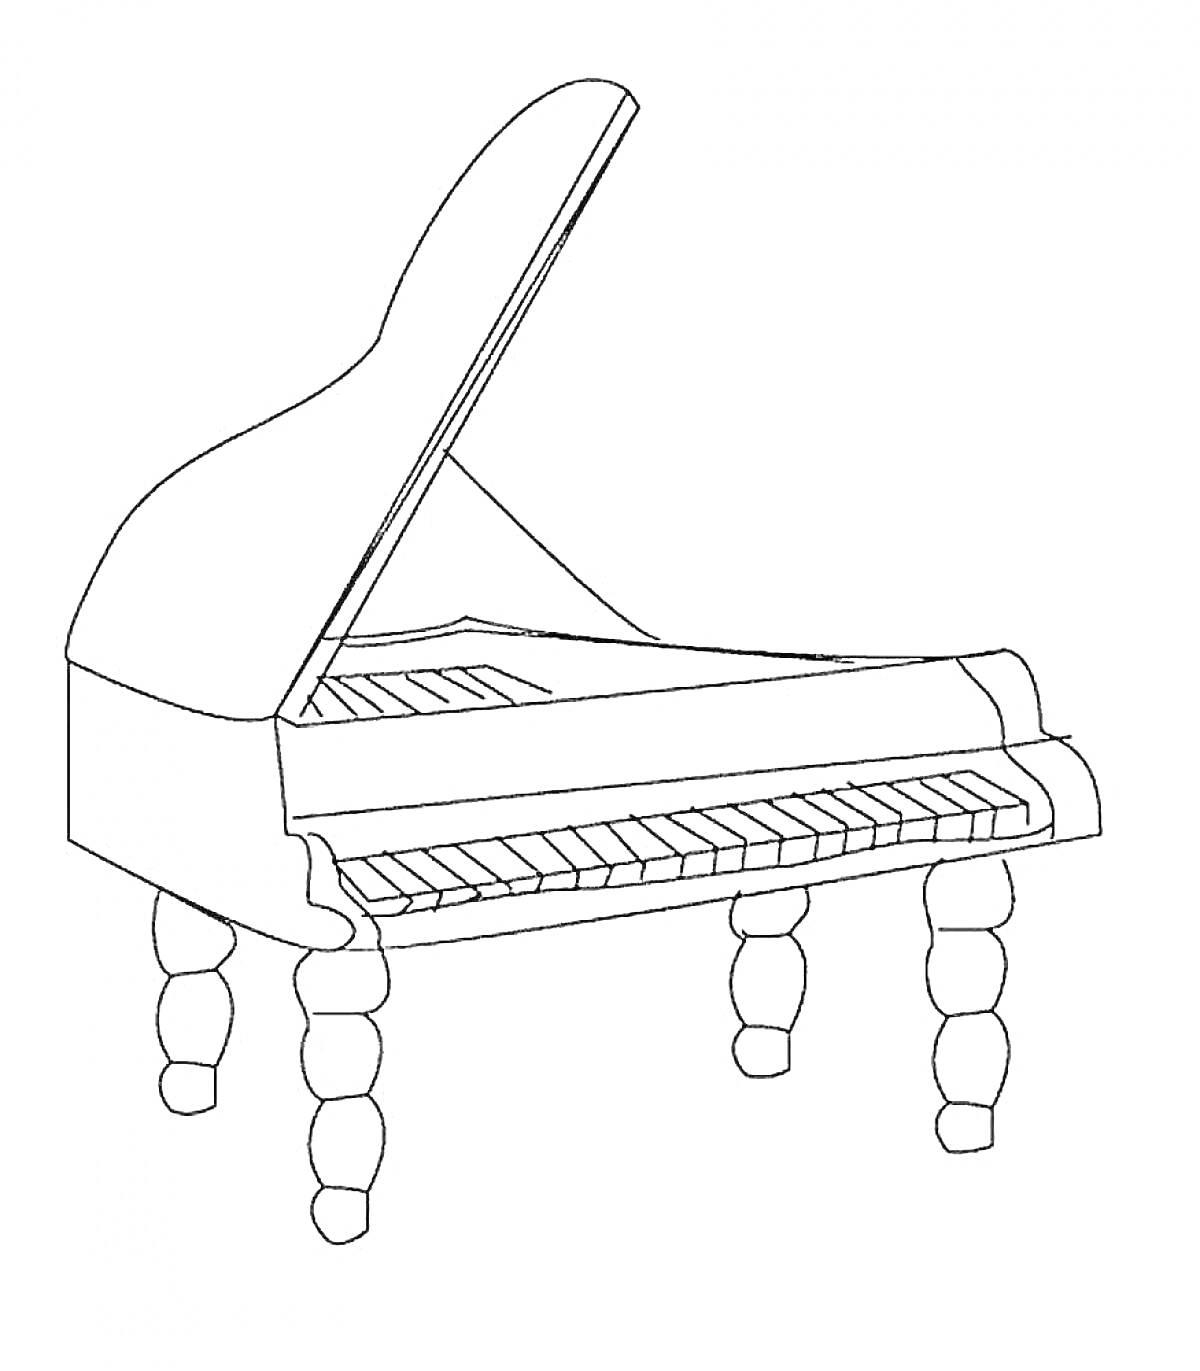 Рояль с открытой крышкой и четырьмя резными ножками.